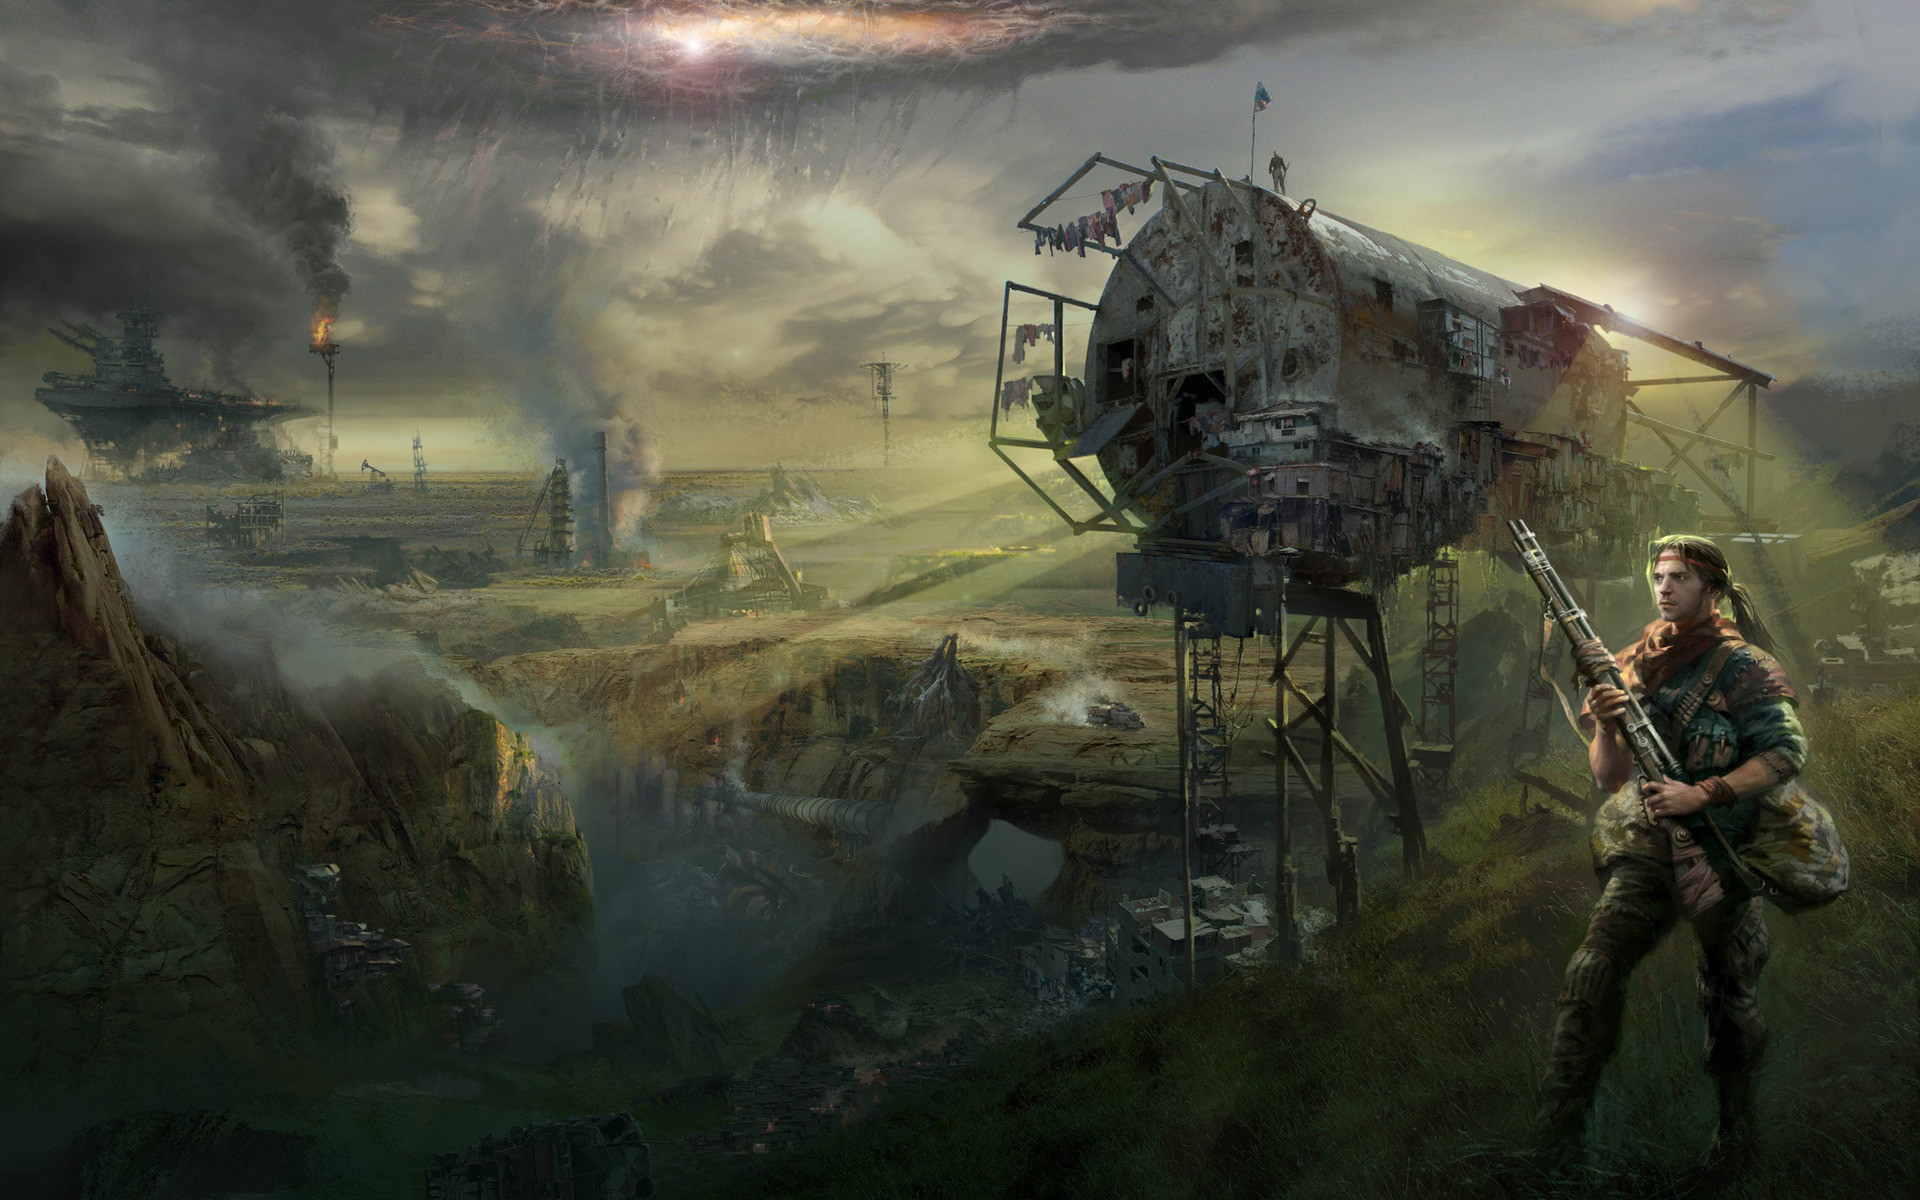 Жизнь после смерти: мир постапокалипсиса в картинах Sci-Fi художников sci-fi, мир, после людей, постапокалипсис, рисунки